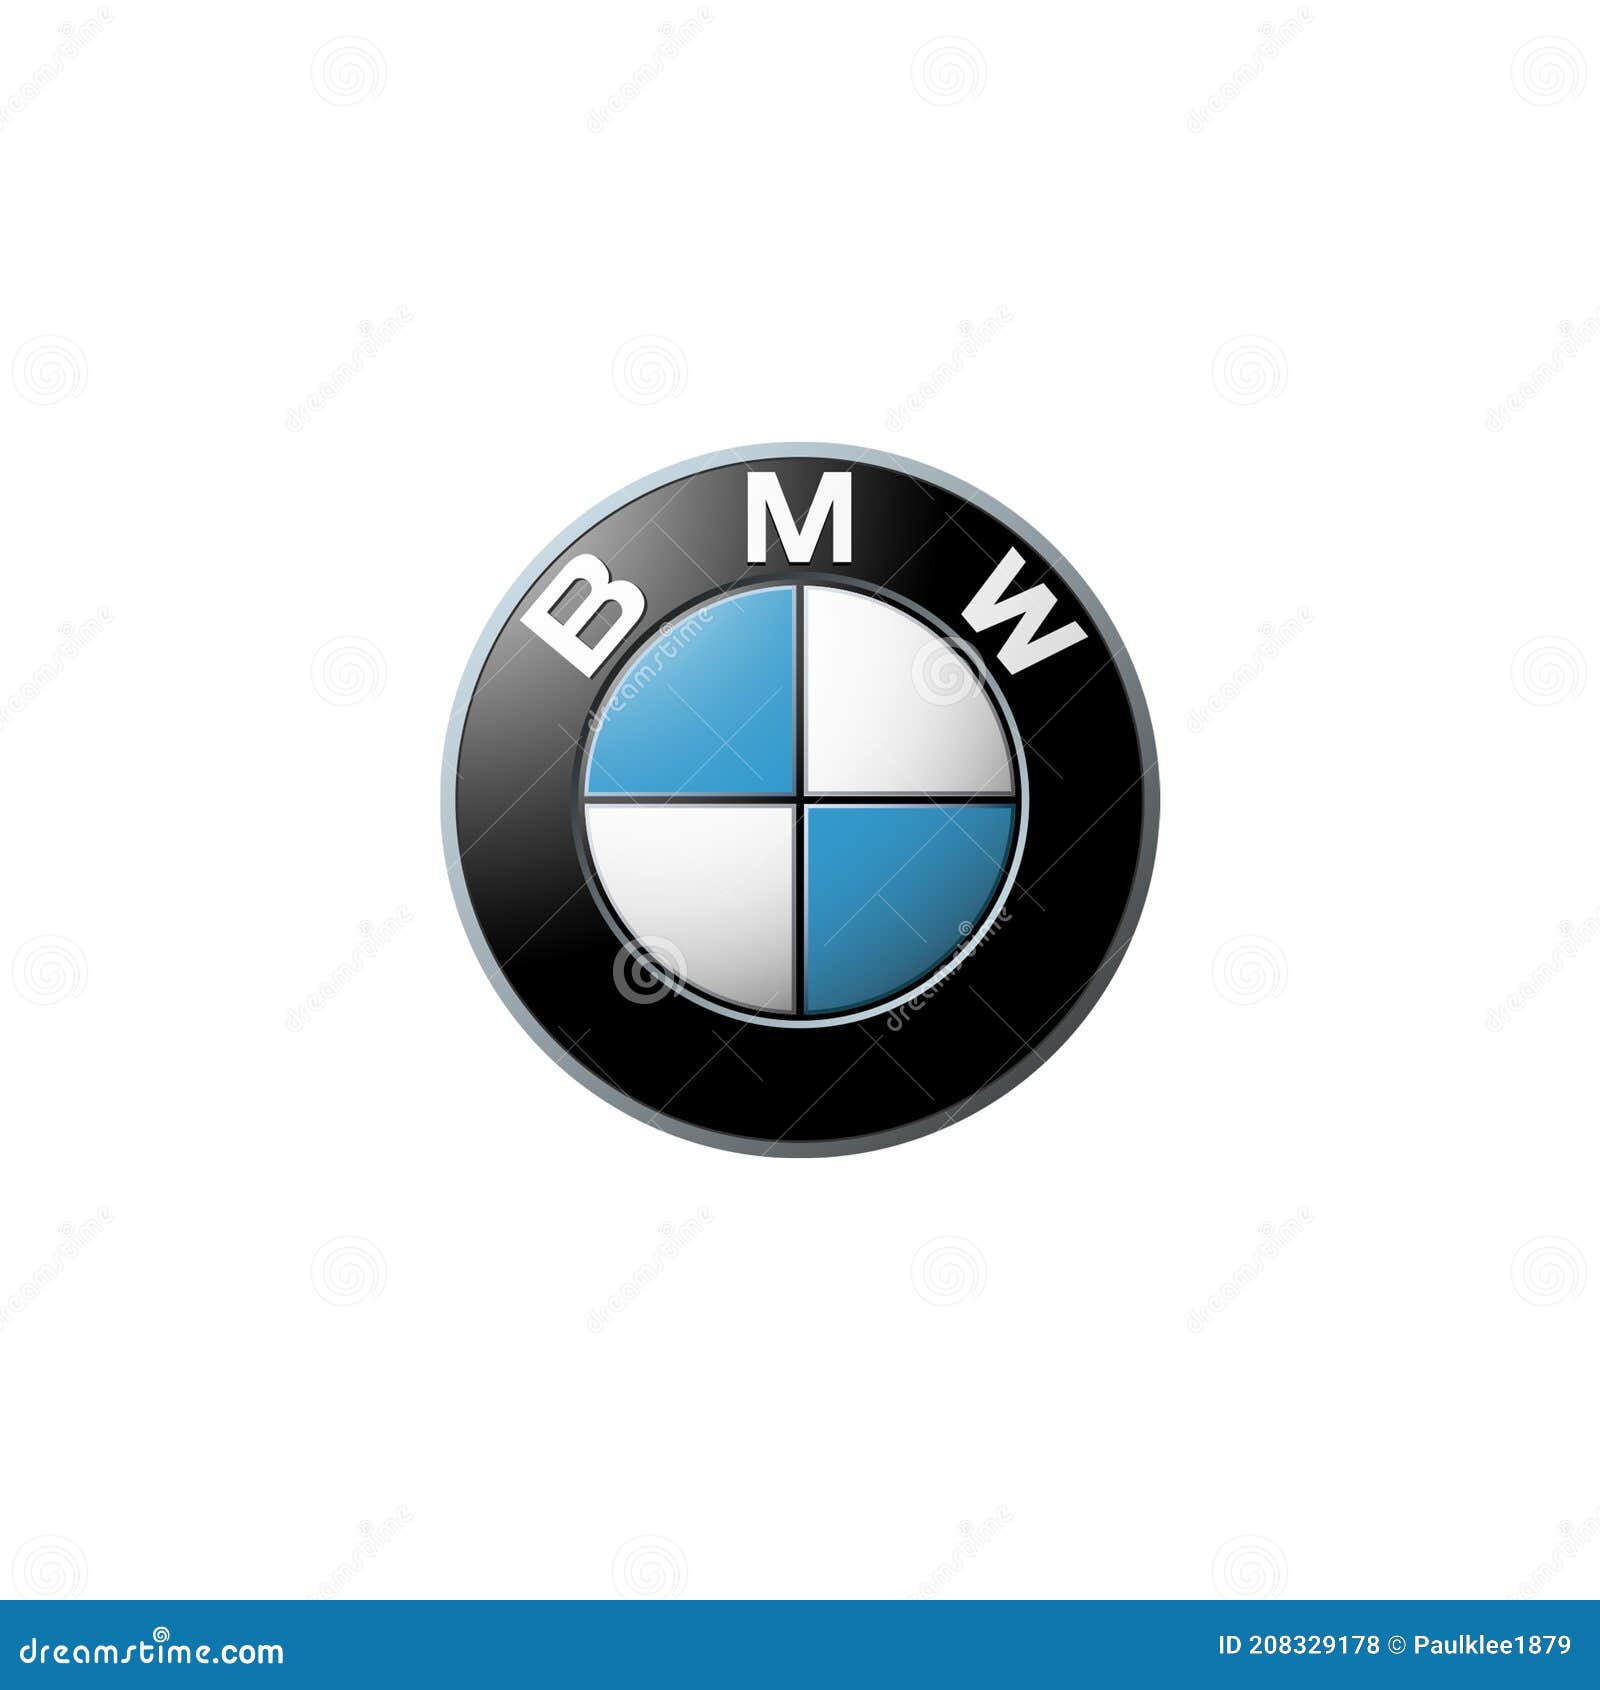 Logo đại diện cho thương hiệu xe nào được bình chọn là đẹp nhất và được ưa chuộng nhất hiện nay?